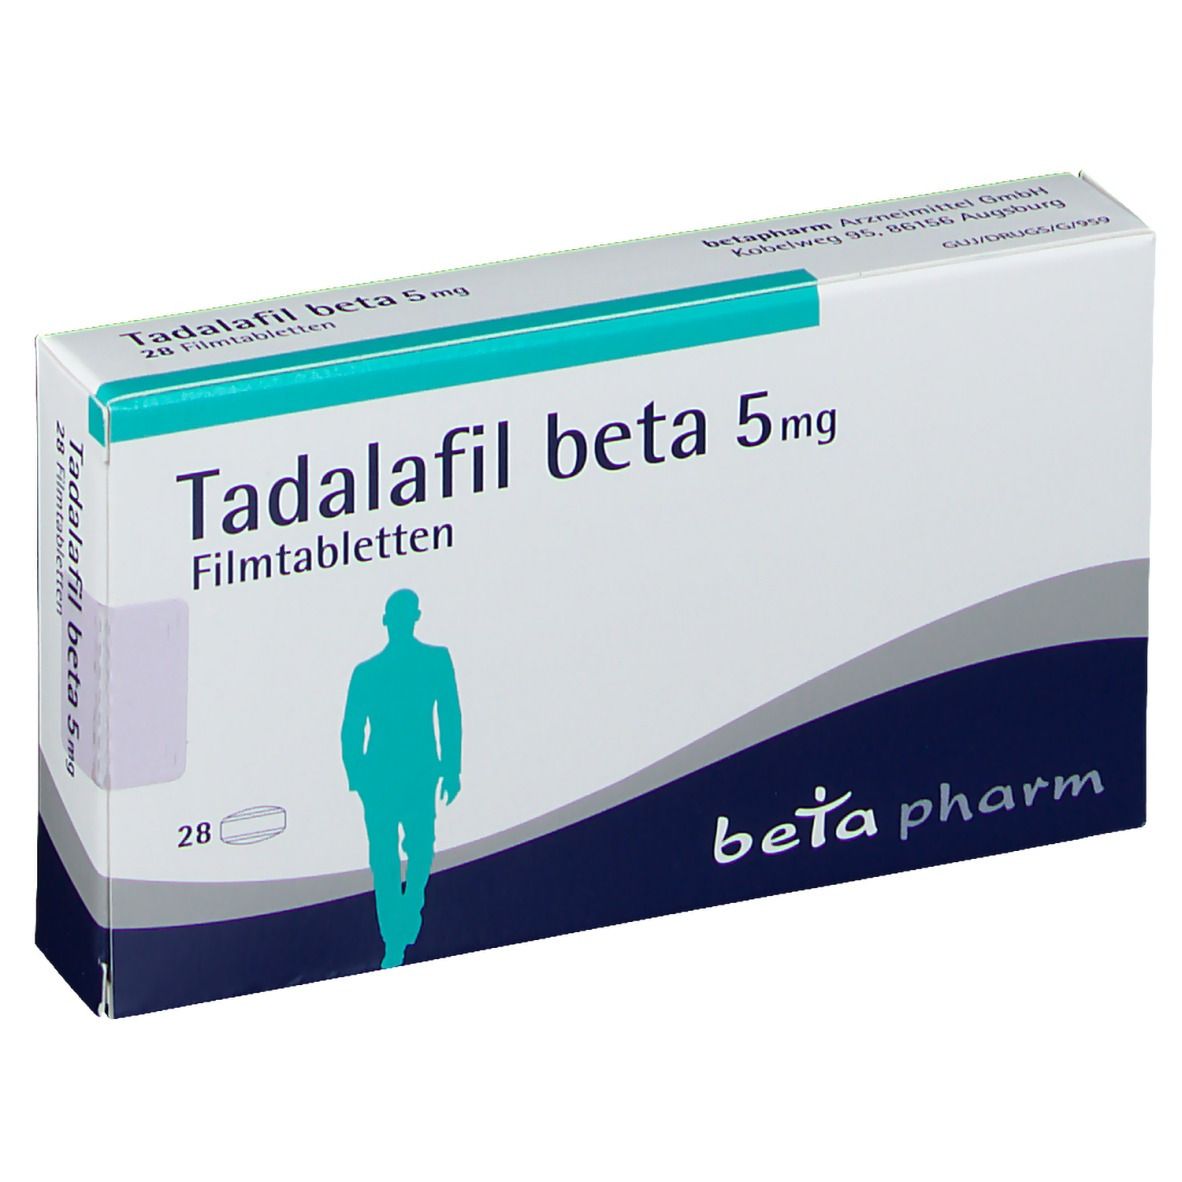 Tadalafil beta 5 mg